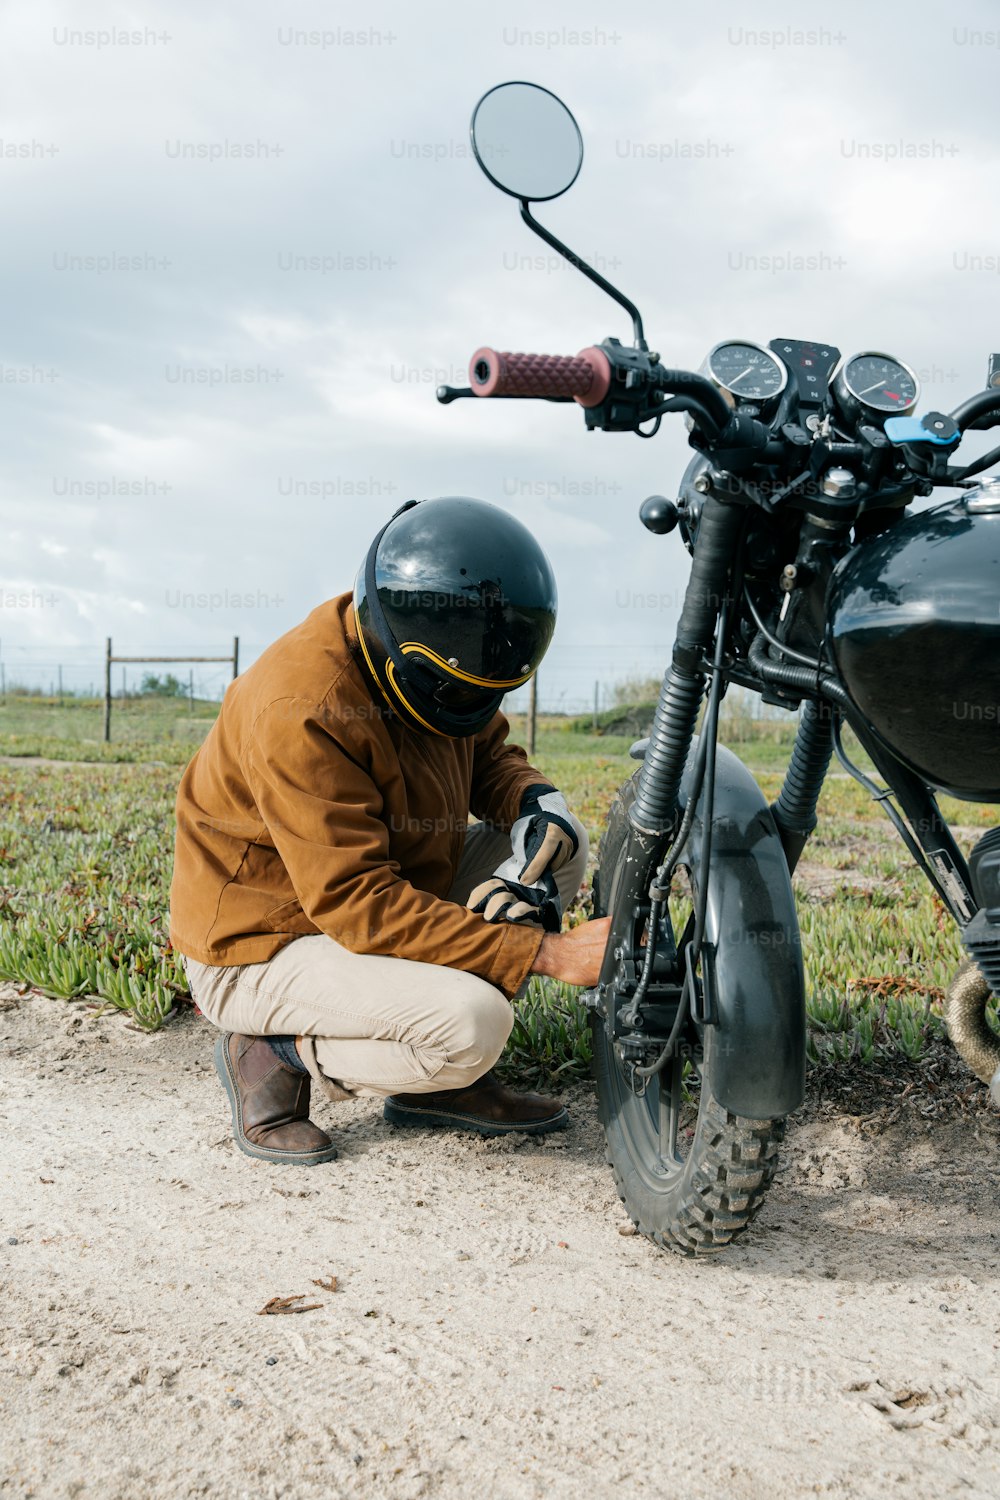 Un hombre arrodillado junto a una motocicleta